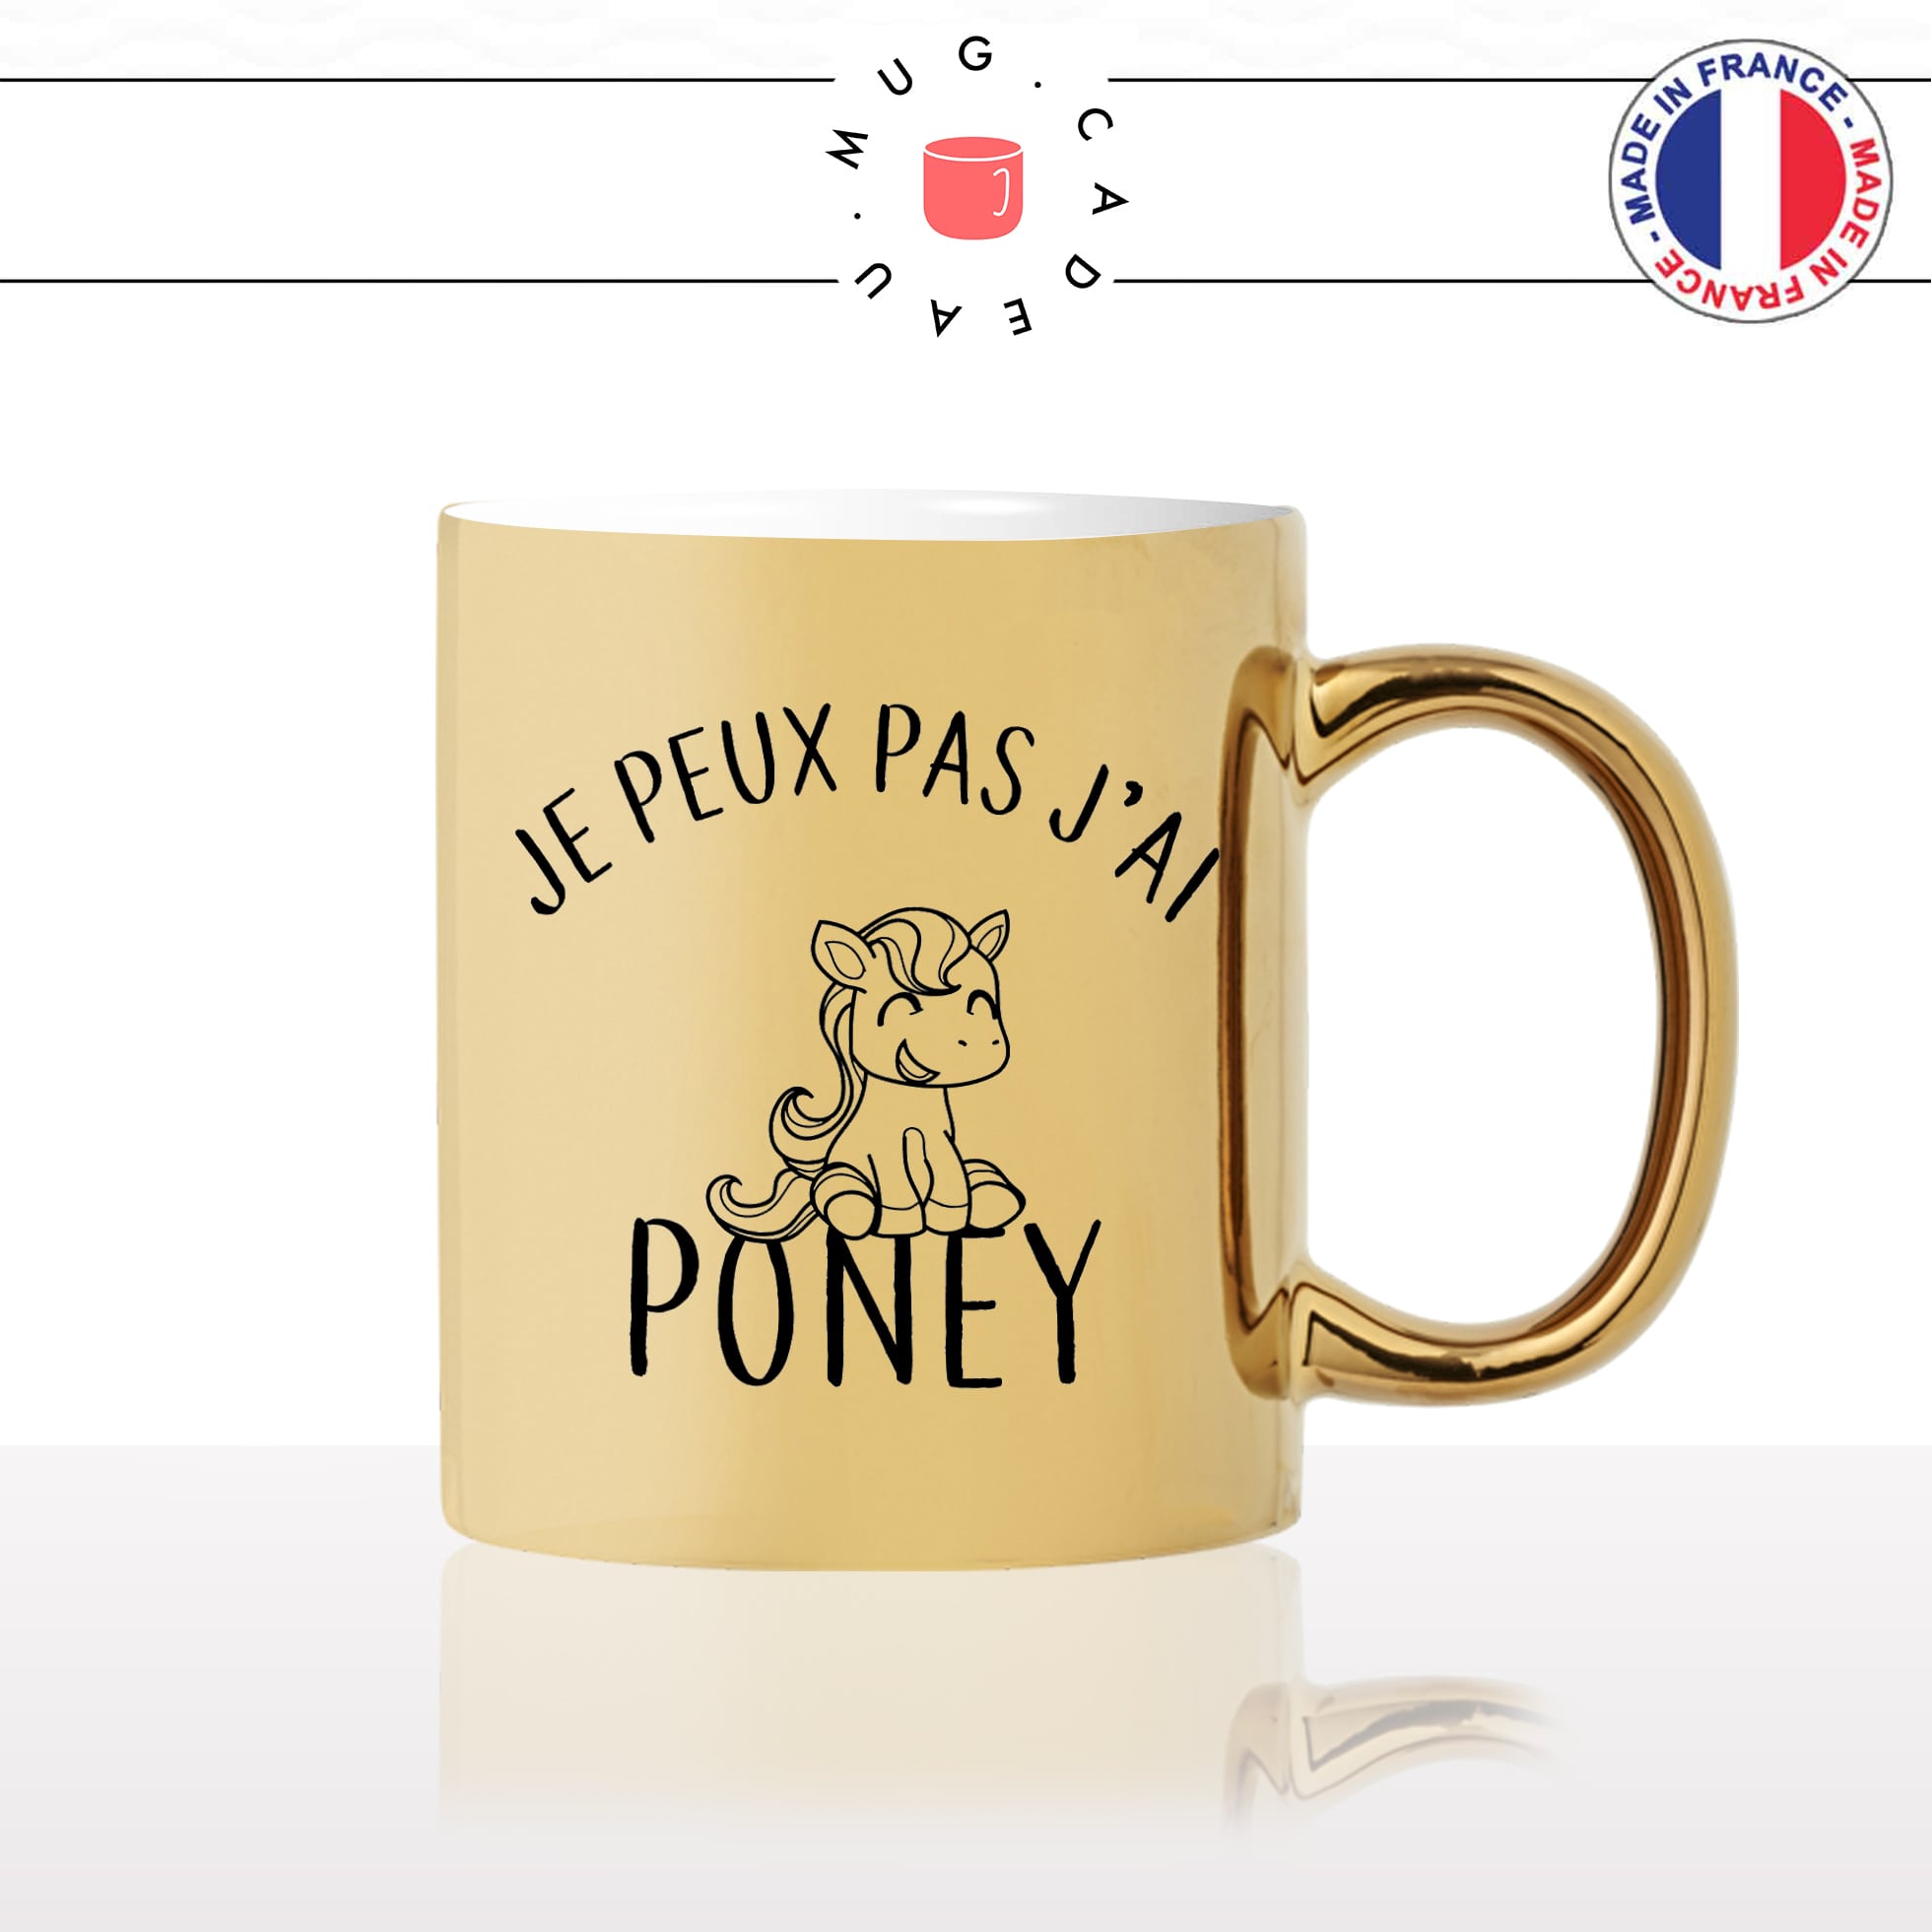 mug-tasse-doré-or-gold-jpeux-pas-jai-poney-cheval-equitation-passion-femme-fille-licorne-humour-fun-idée-cadeau-personnalisé-café-thé2-min